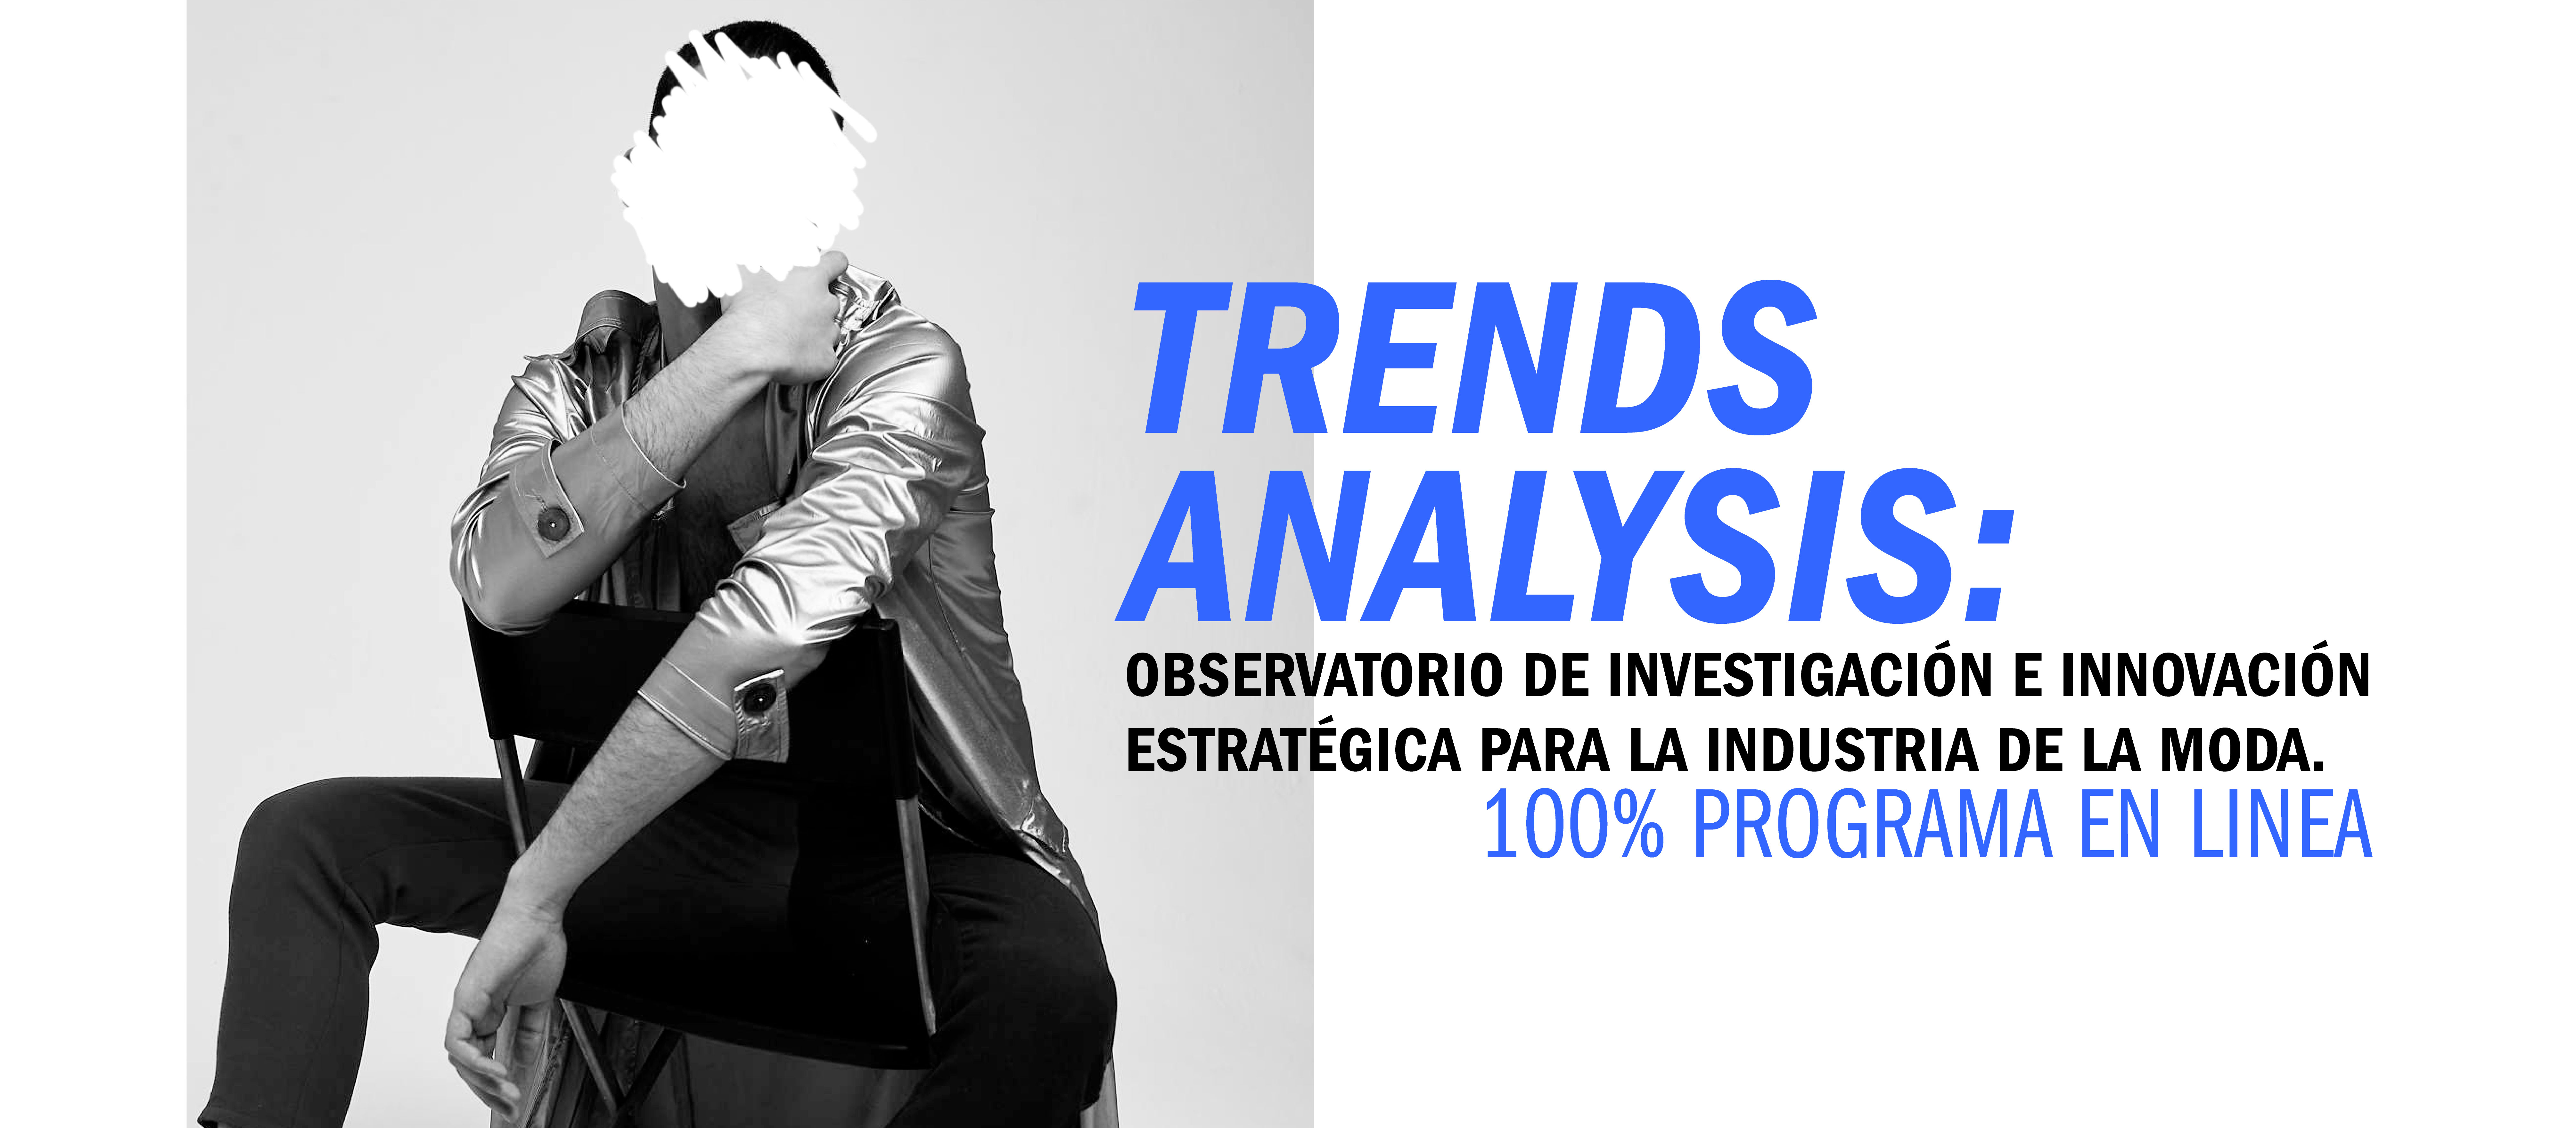 Inicio programa On-line Trends analysis: Observatorio de investigación e innovación estratégica para la industria de la moda.